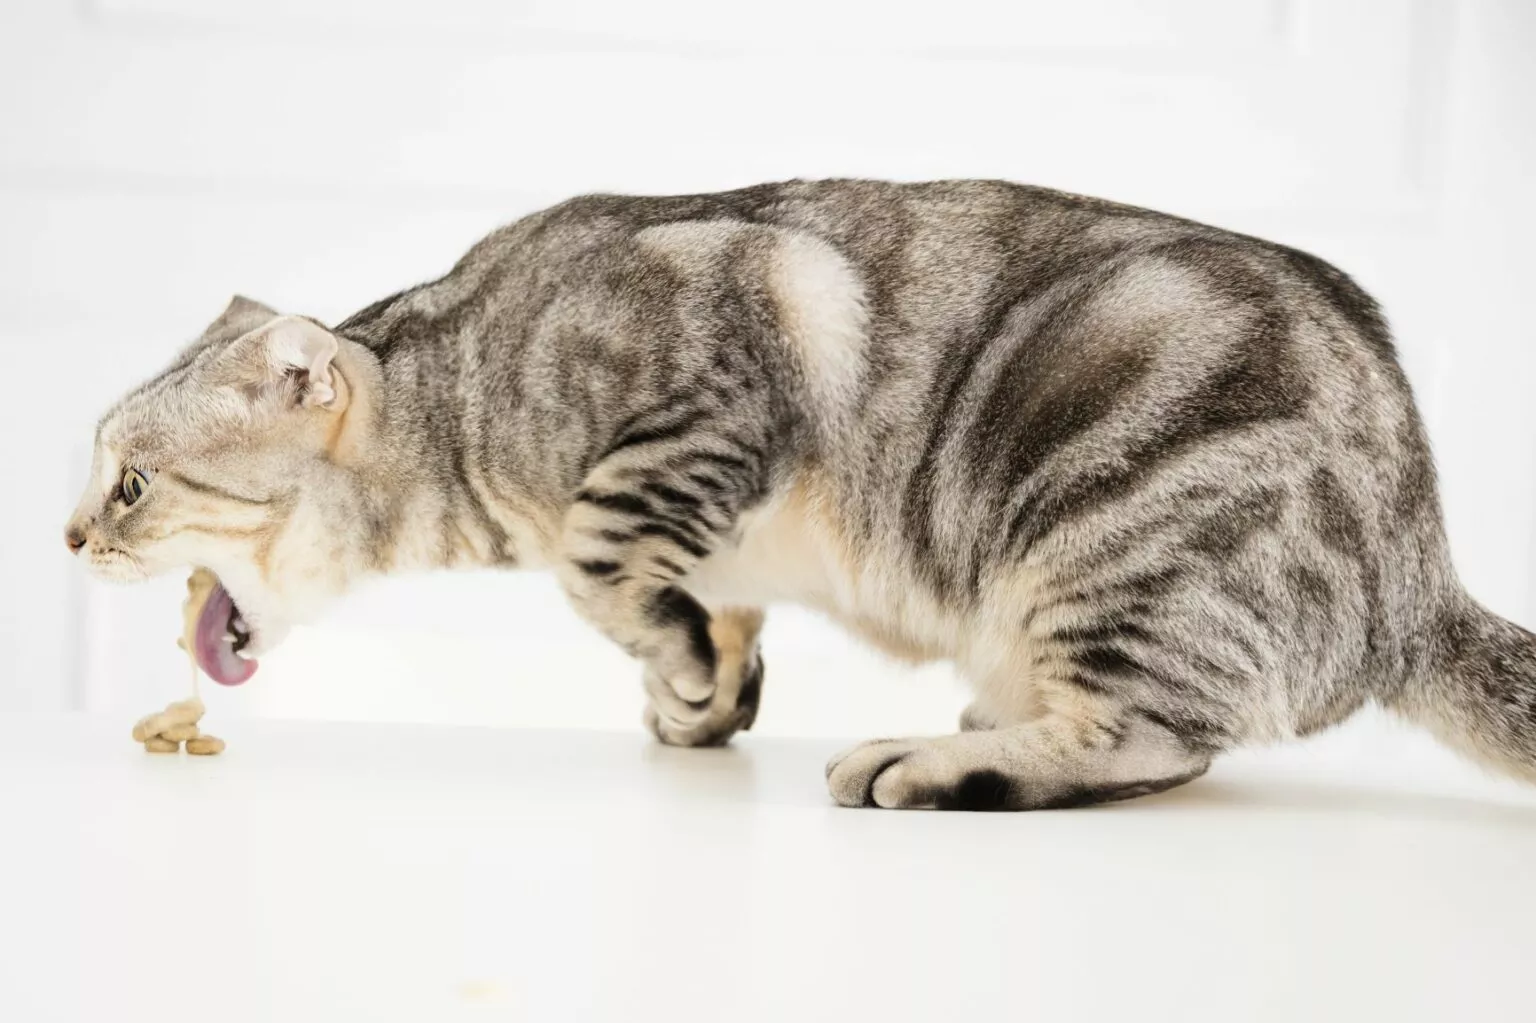 Simptomi opstrukcije crijeva kod mačke